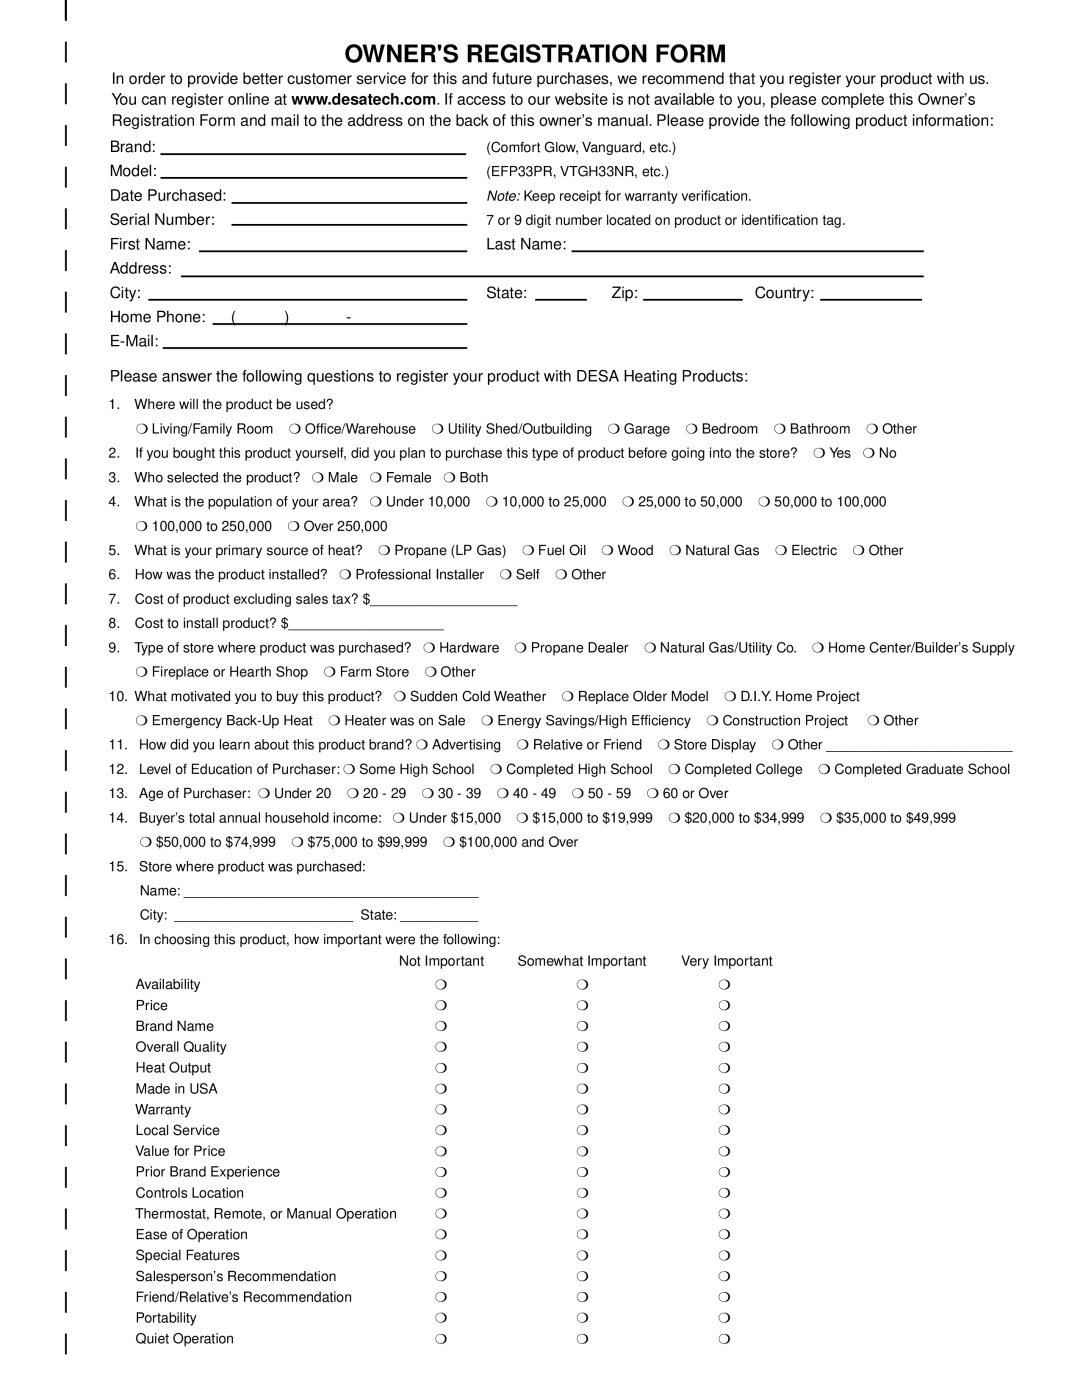 Desa LDL3930NR, LDL3930PR, LDL3924PR installation manual Owners Registration Form 